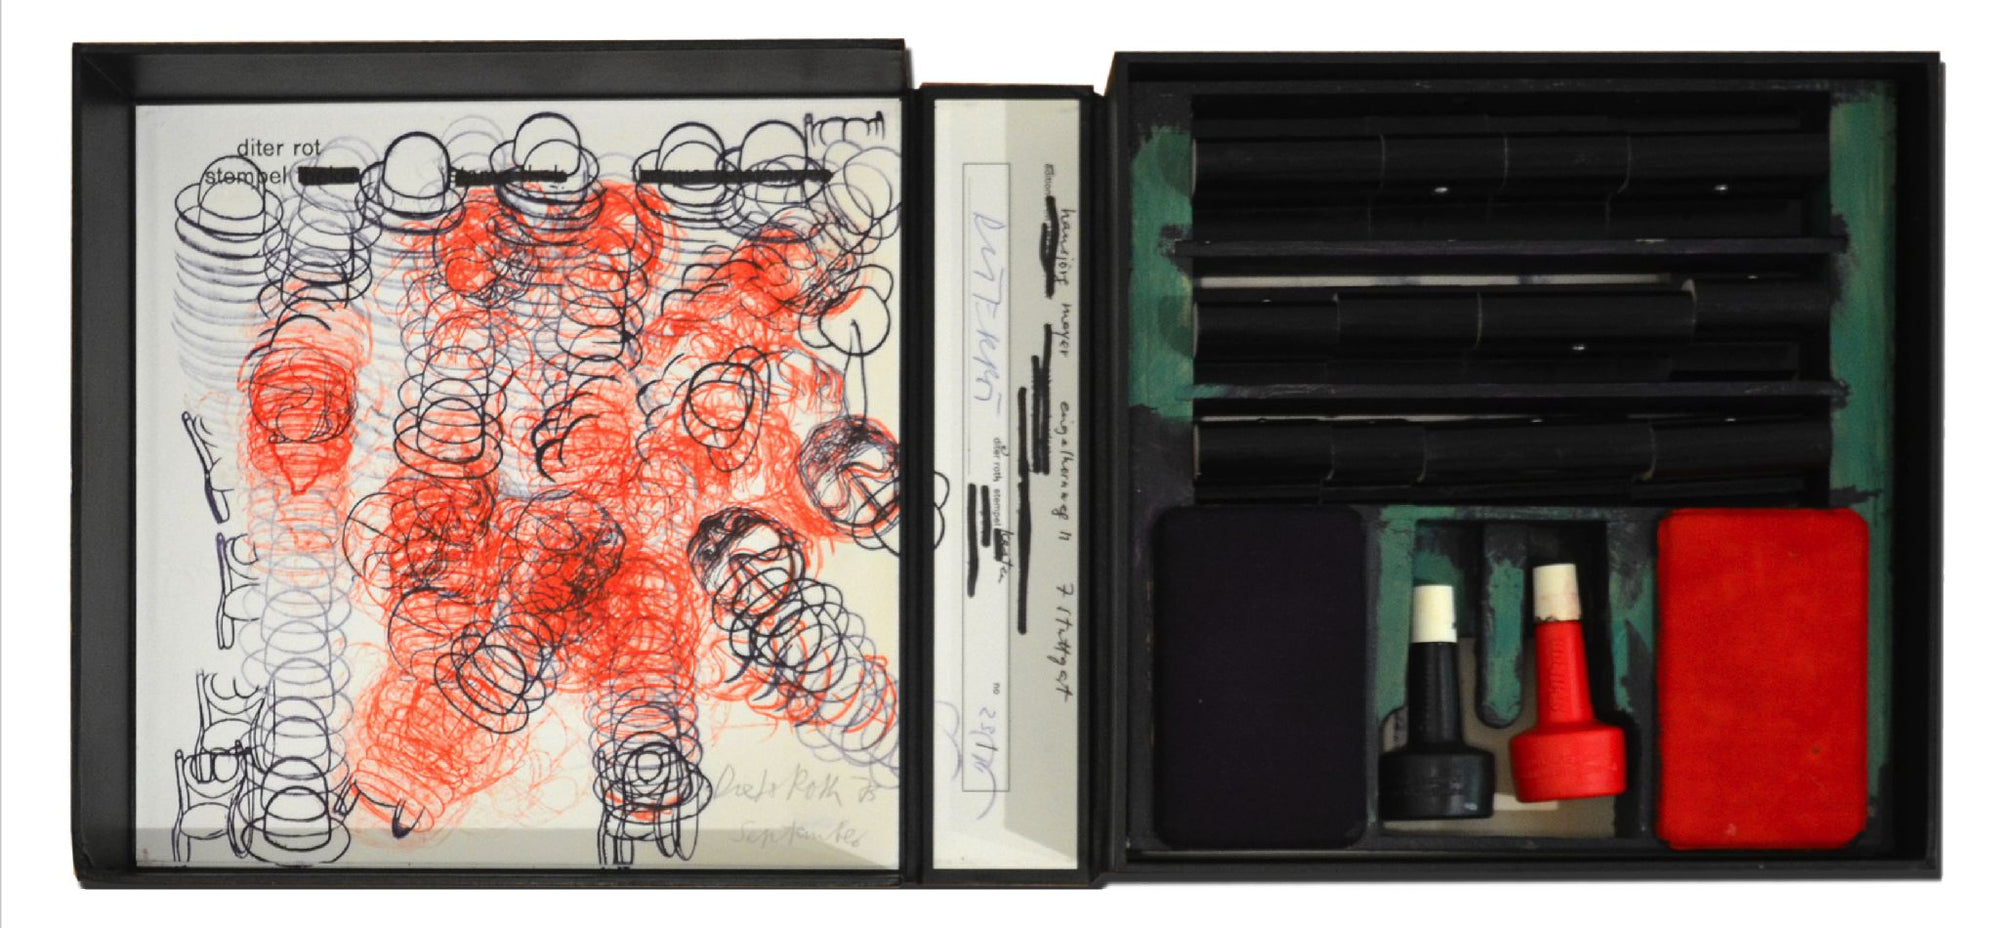 Dieter-Roth-Stamp-Box-1968